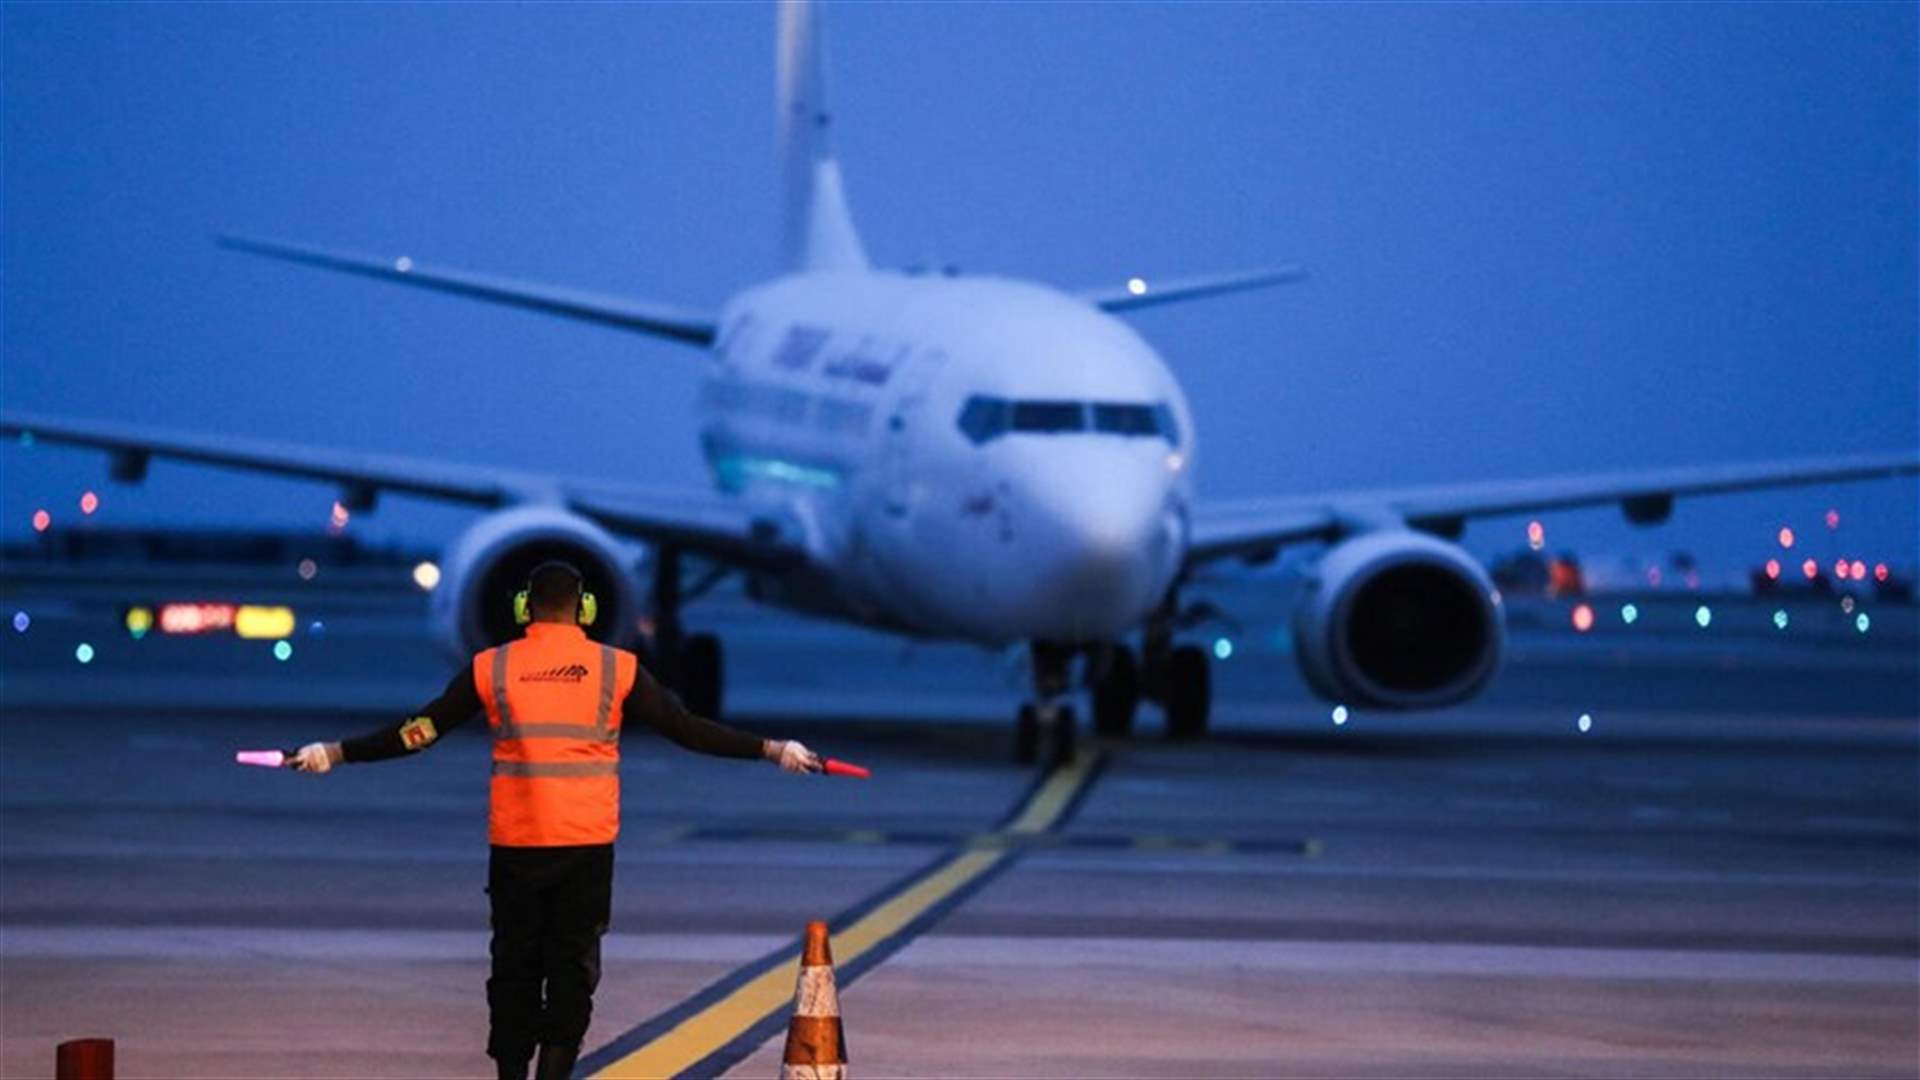 بسبب إضراب المراقبين الجويين... إلغاء آلاف الرحلات في فرنسا الجمعة